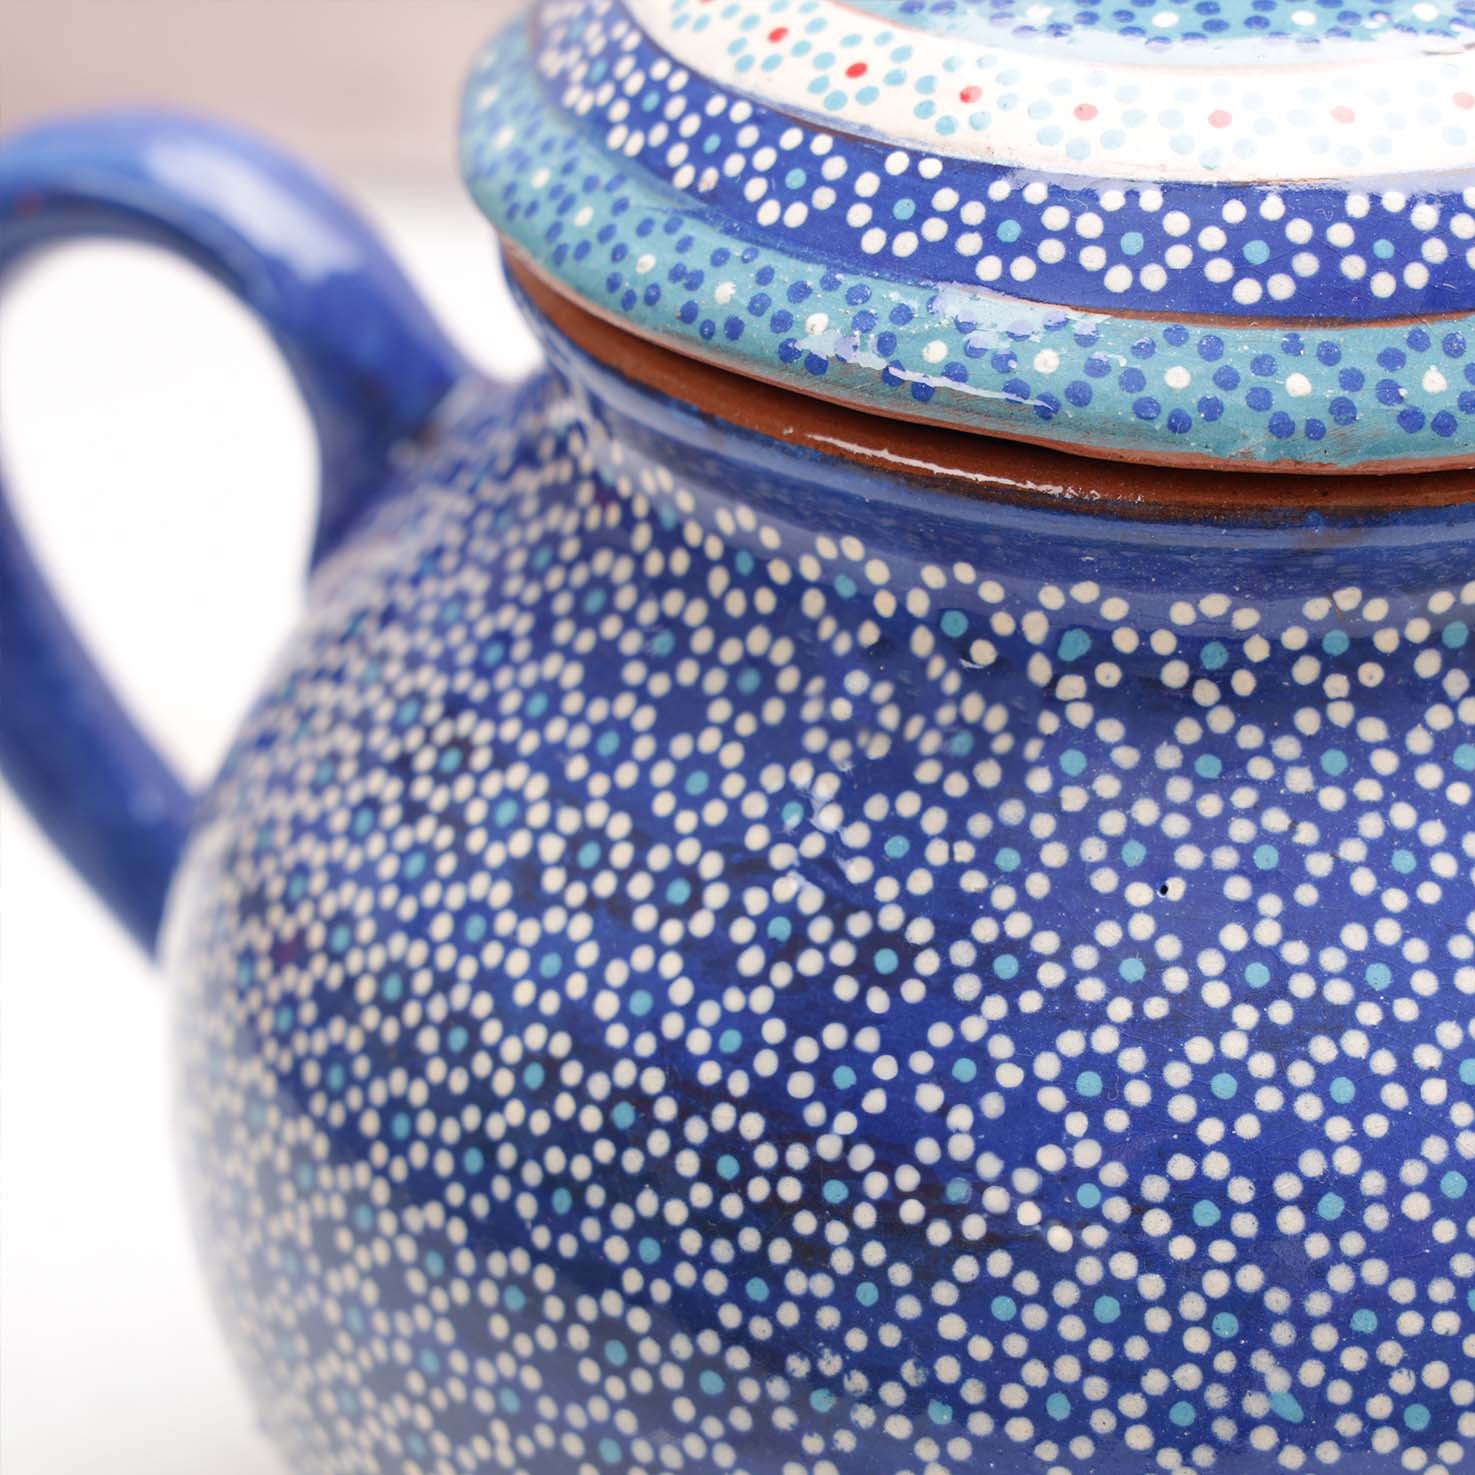 Capula Clay Hand-Painted Tea Pot